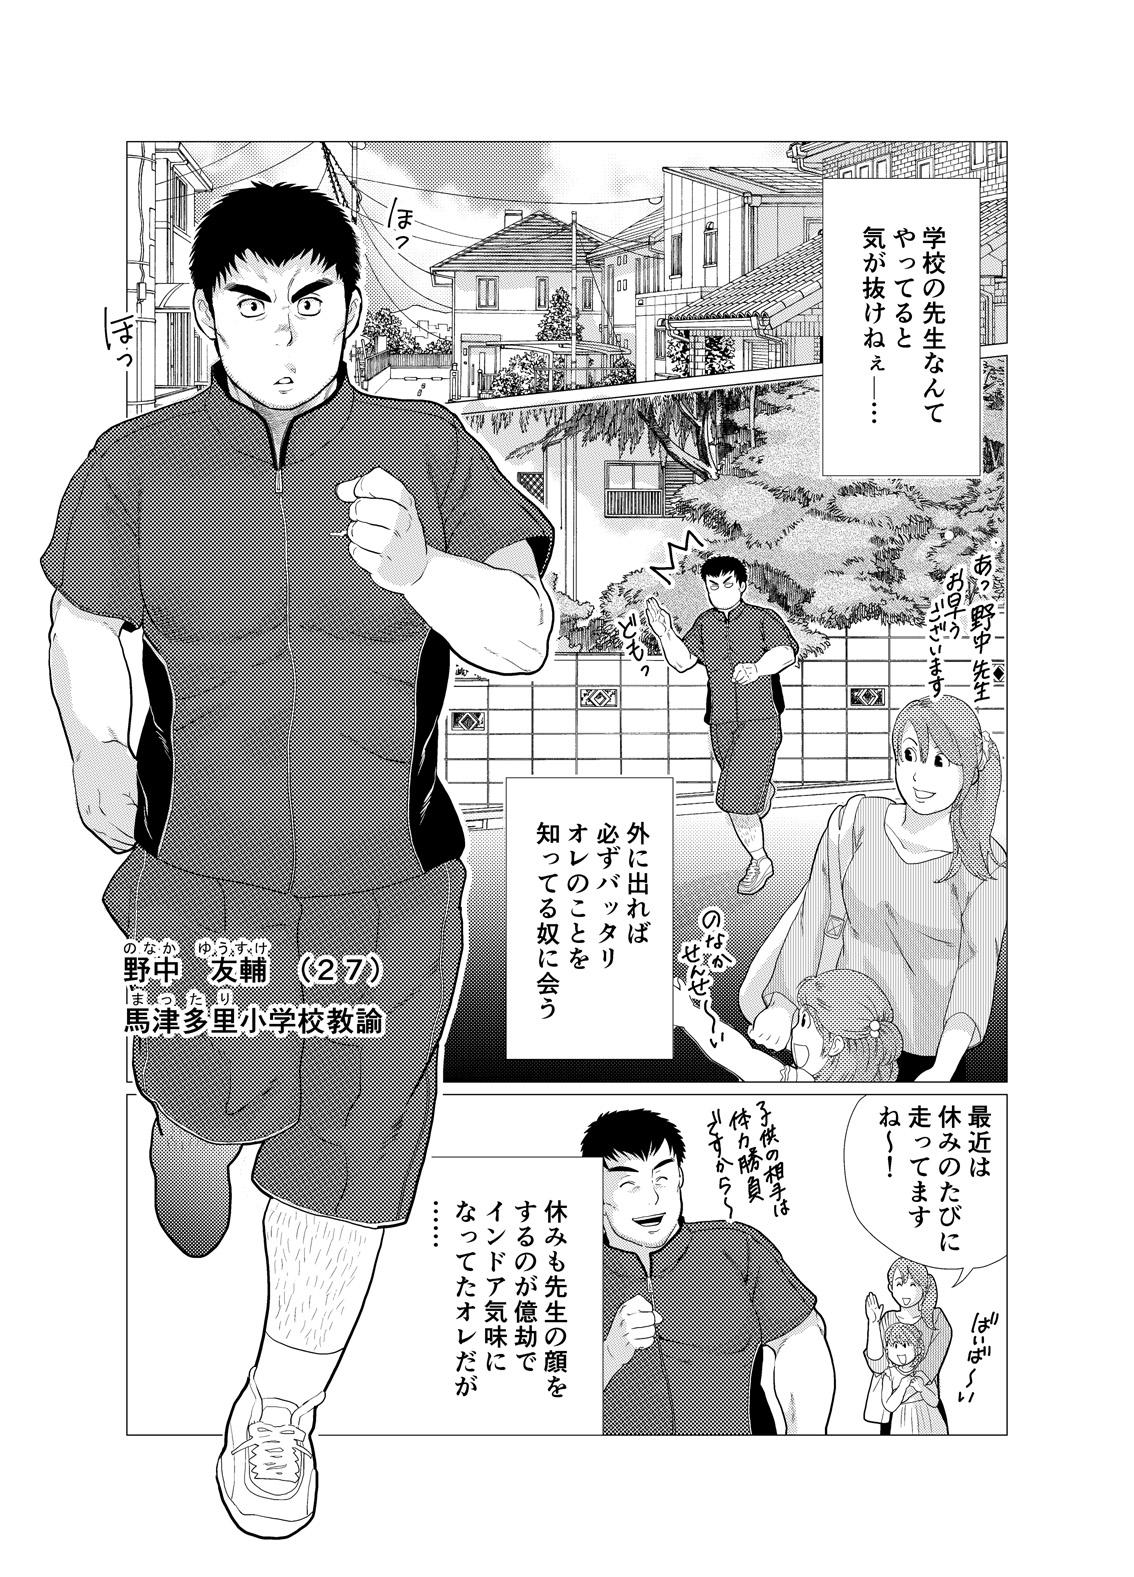 Ohmibod Ikenai desu! Nonaka-sensei - Original Dom - Page 3